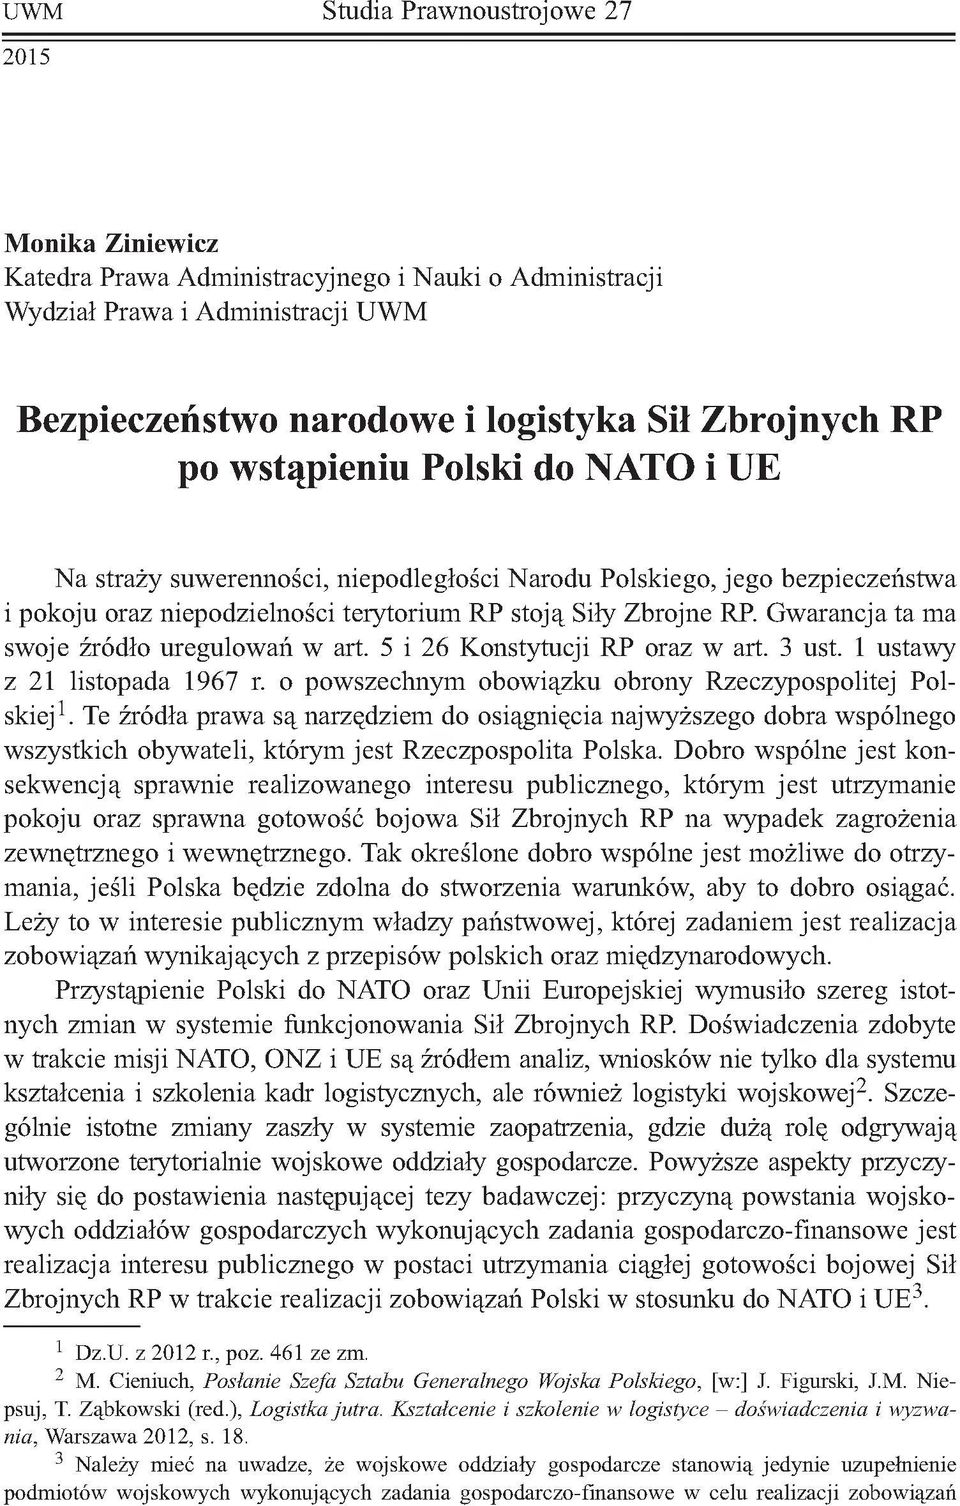 Gwarancja ta ma swoje źródło uregulowań w art. 5 i 26 Konstytucji RP oraz w art. 3 ust. 1 ustawy z 21 listopada 1967 r. o powszechnym obowiązku obrony Rzeczypospolitej Polskiej1.